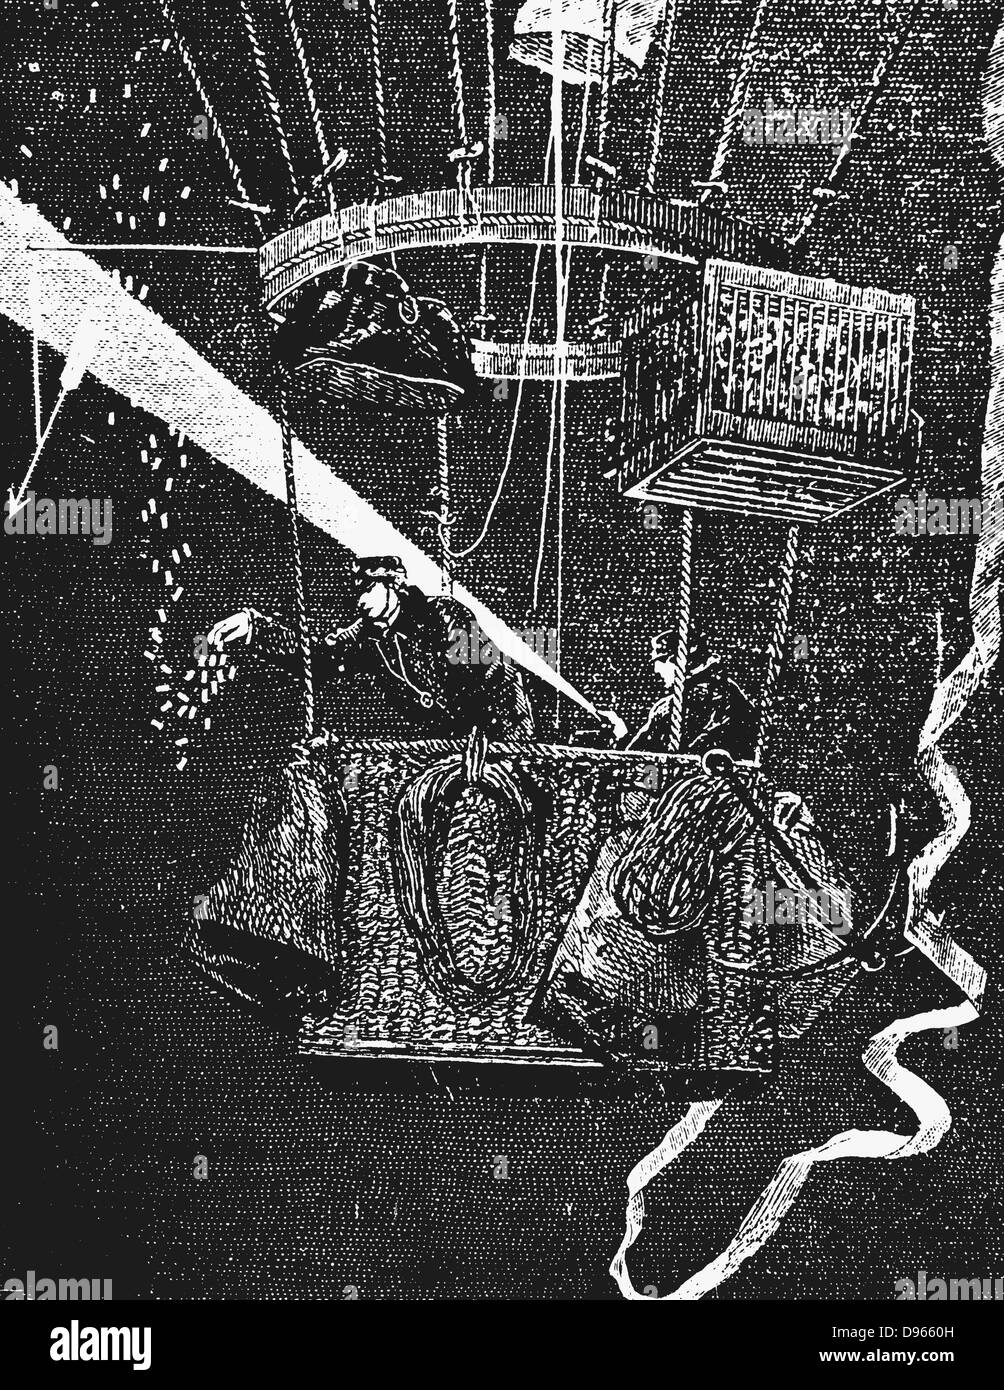 Ballon "Ville d'Orleans' nach dem Verlassen des Gare du Nord in der Nacht, 24. November 1870, während der Belagerung von Paris im Deutsch-Französischen Krieg. Käfig oben rechts im Bild enthält Brieftauben, die verwendet würden, um Nachrichten zurück zu belagerten Stadt zu tragen. Stockfoto